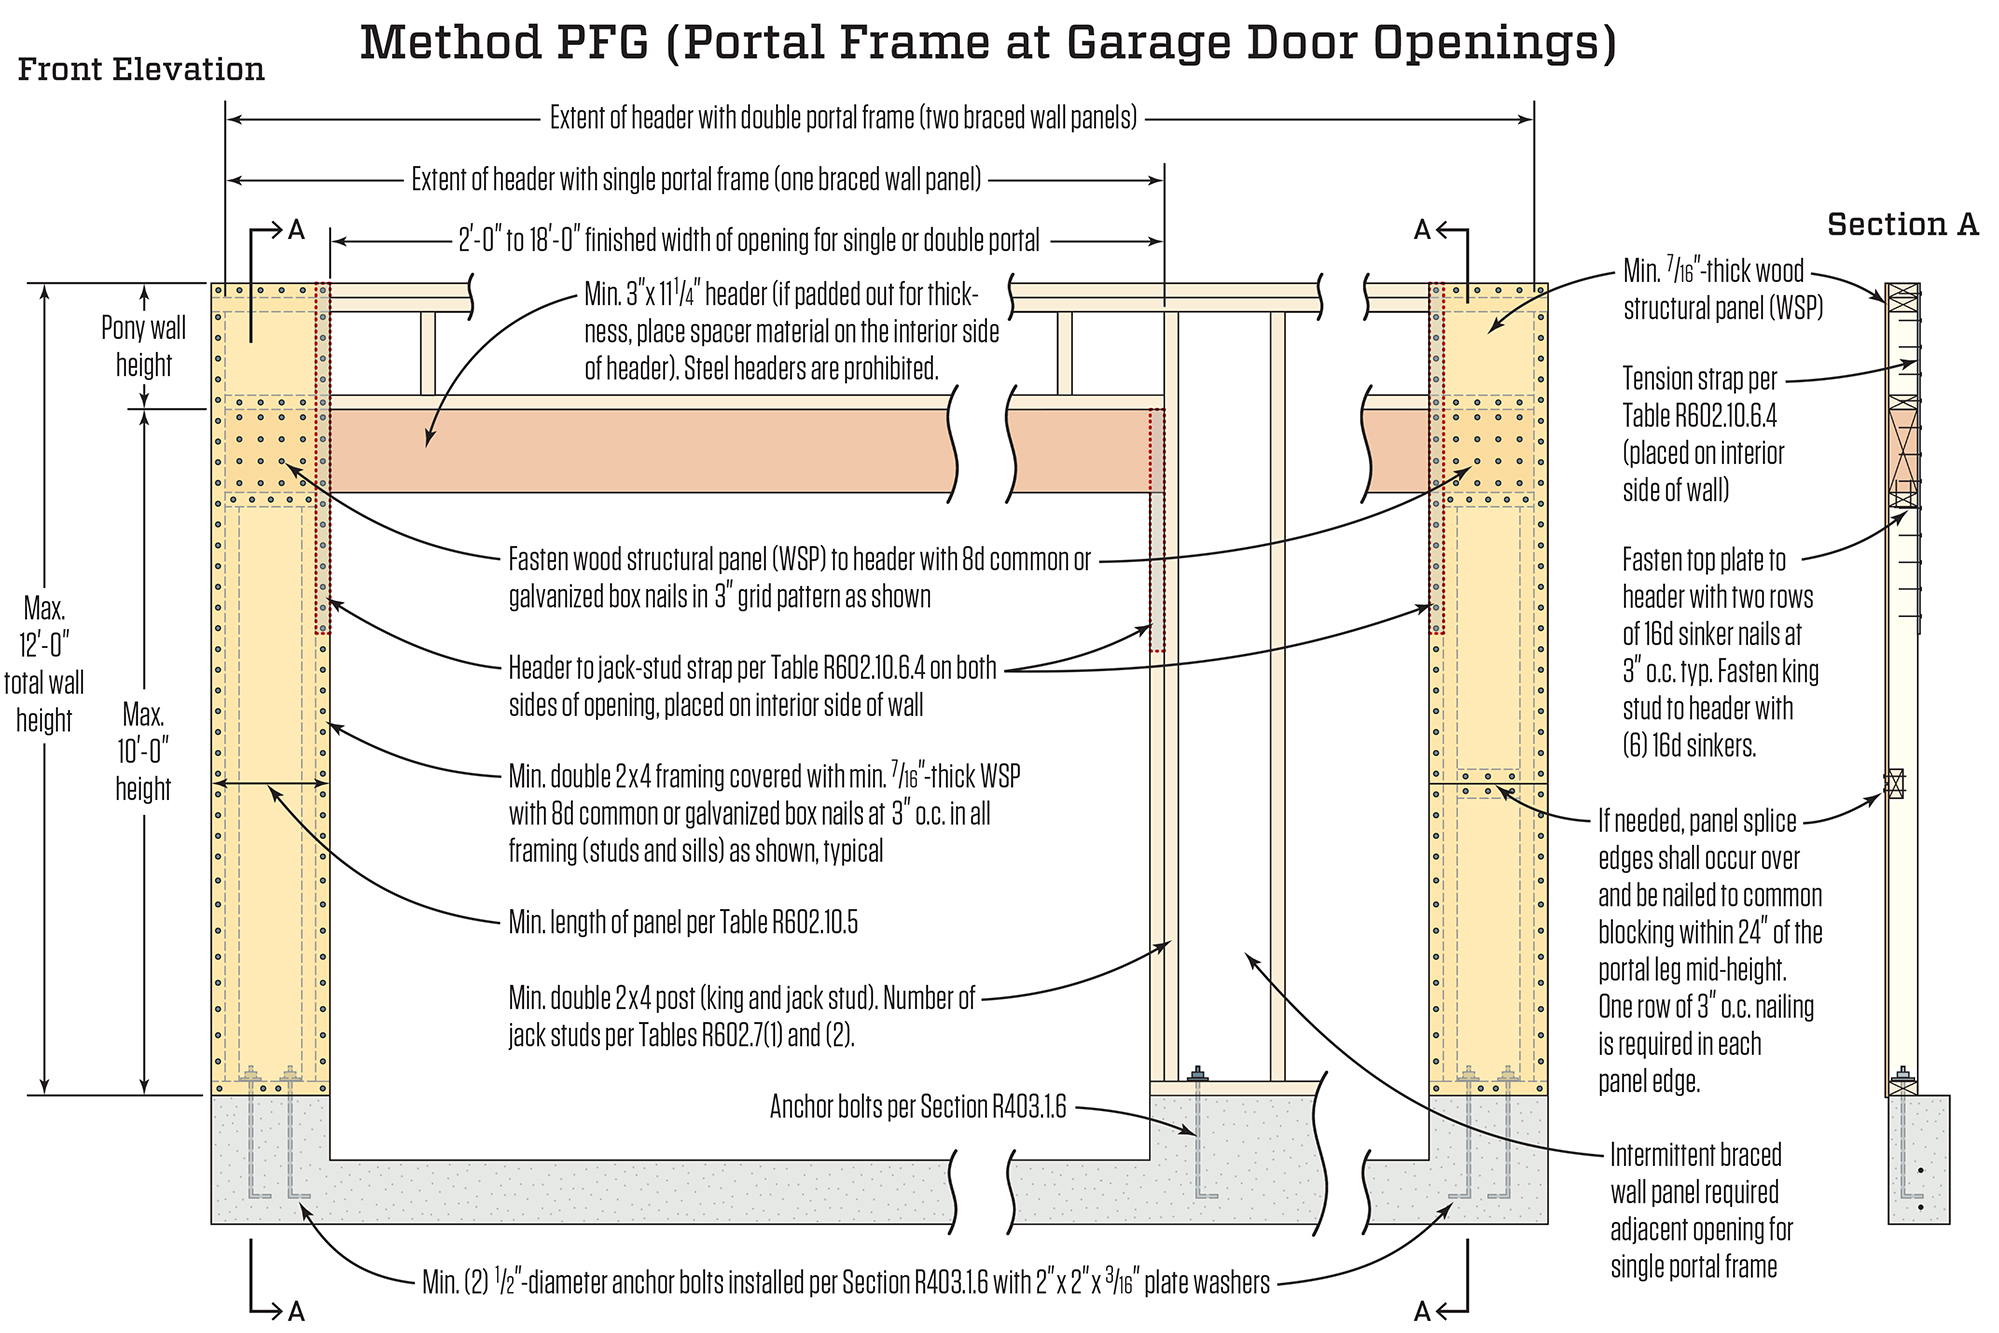 portal frame detail